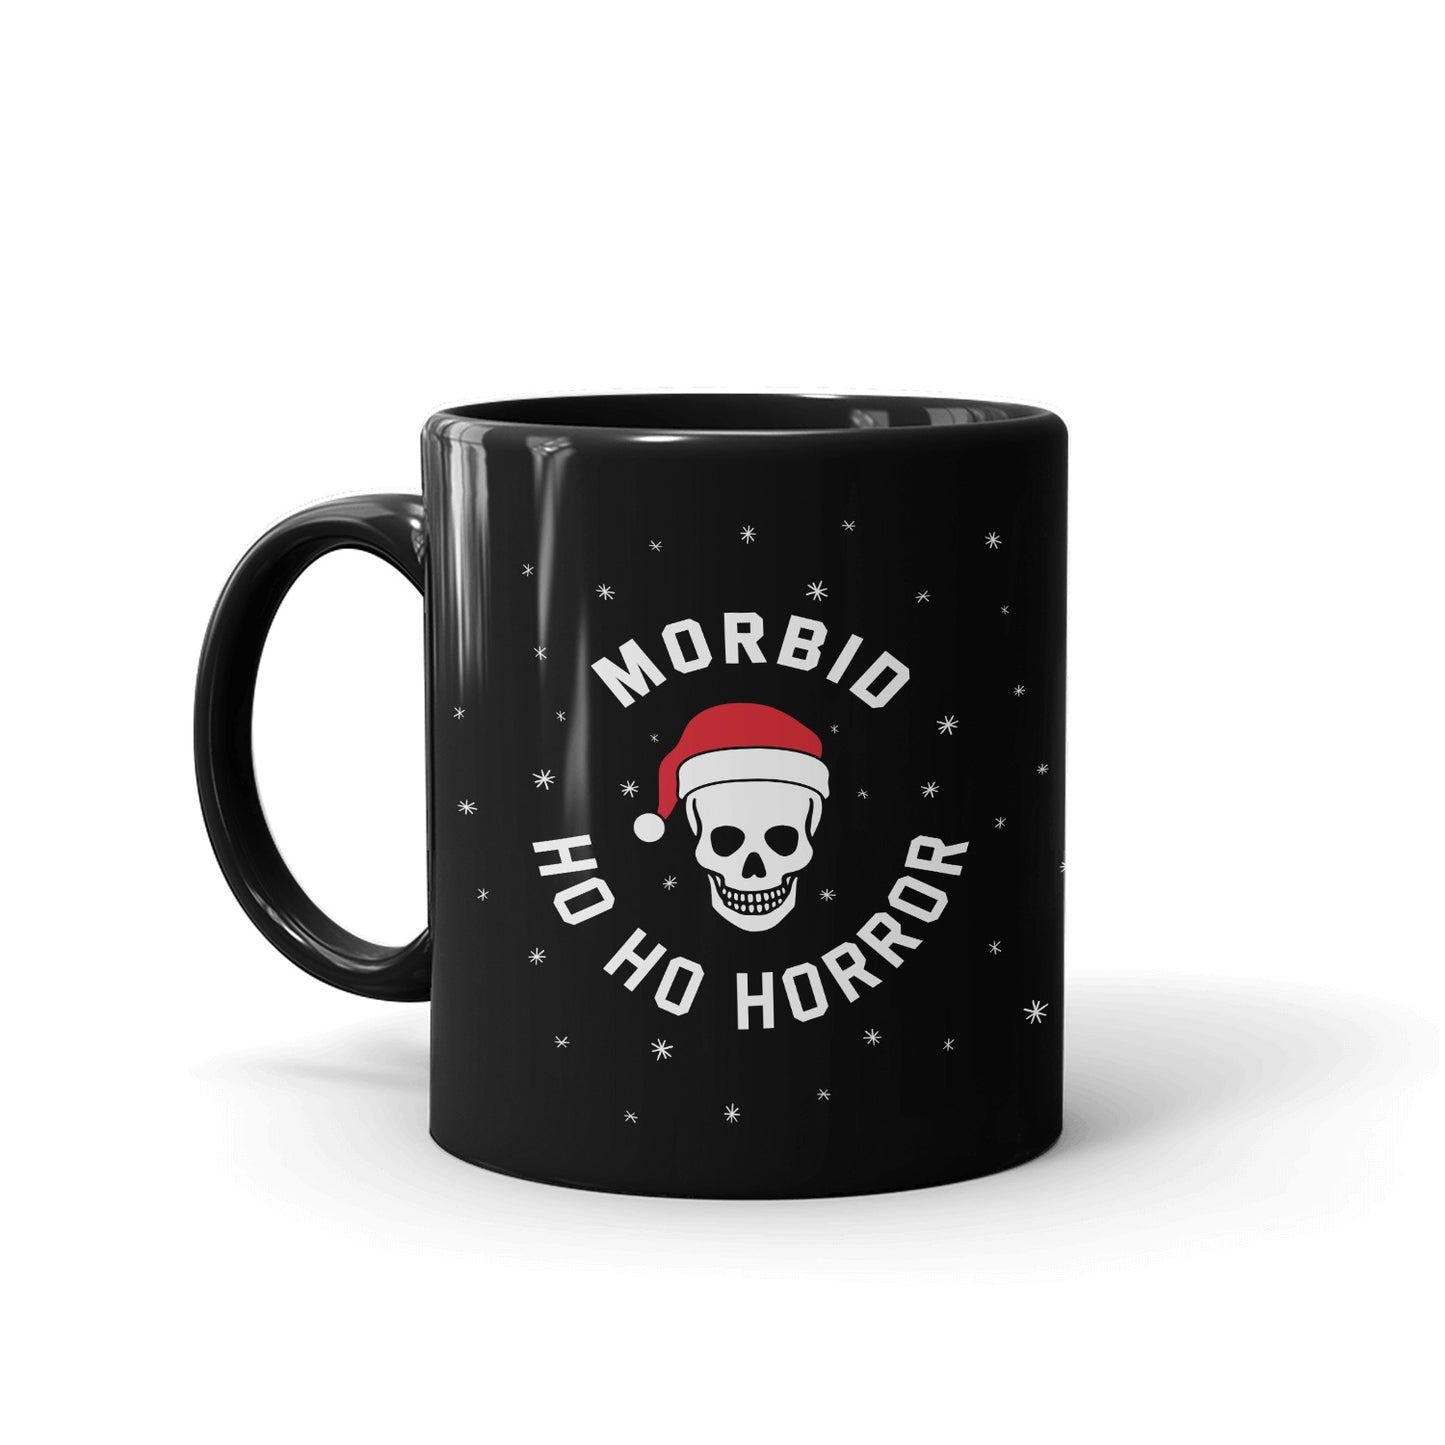 Morbid Ho Ho Horror Personalized 15 oz Black Mug